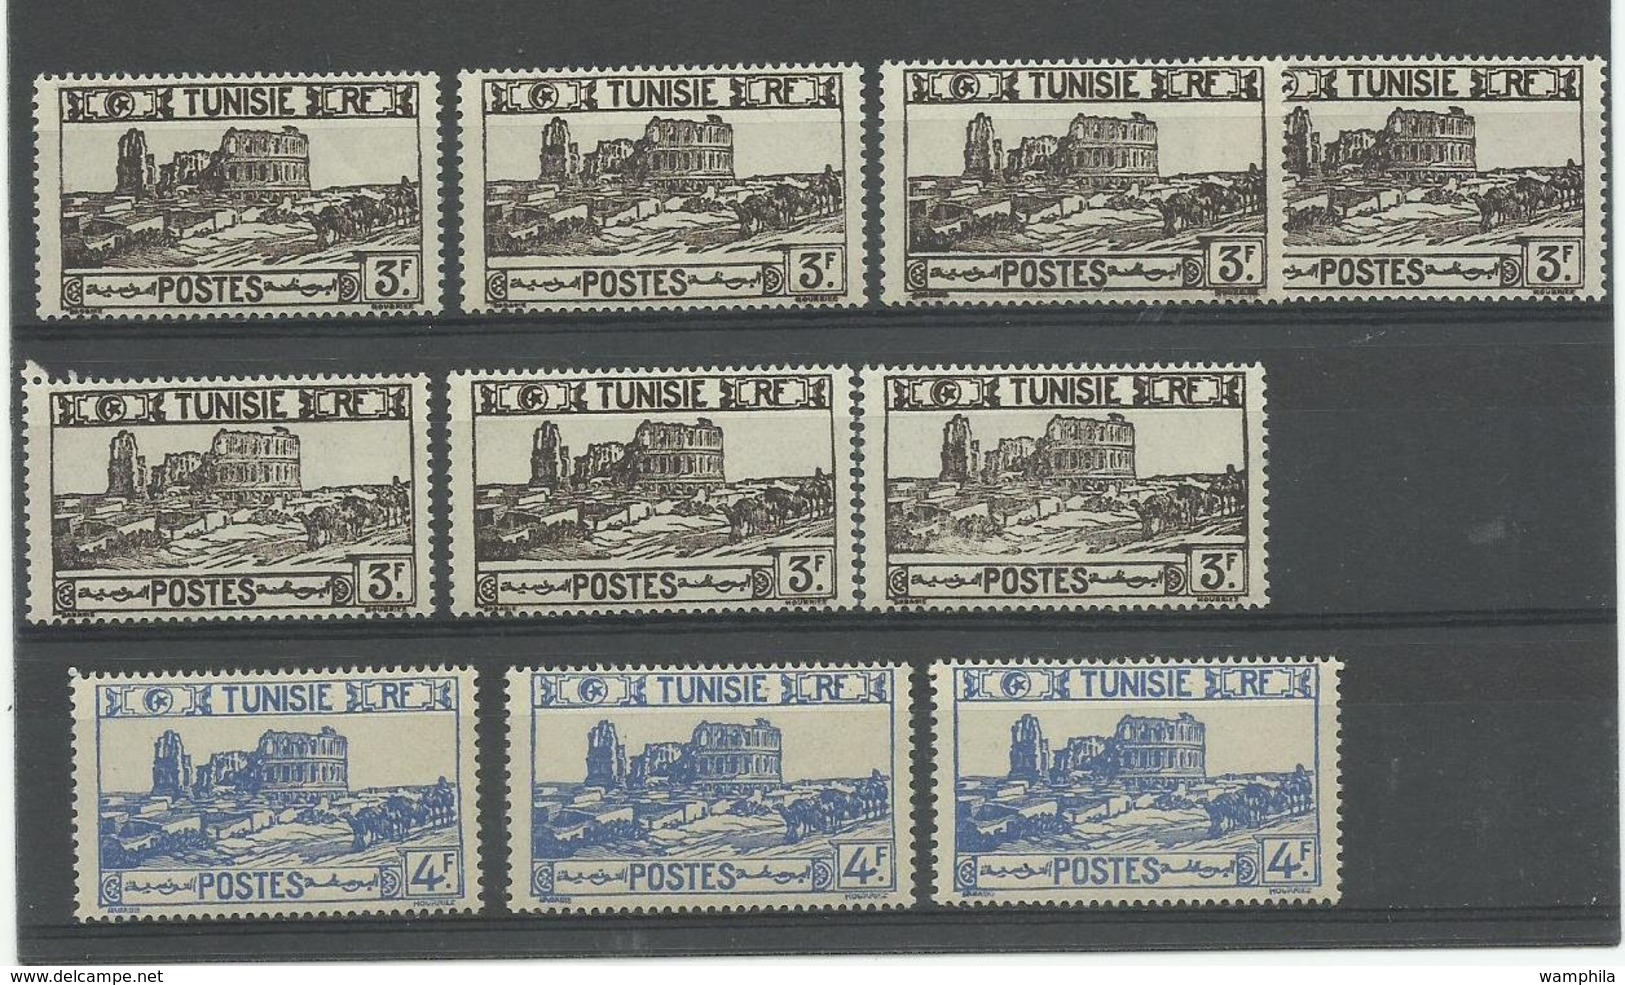 Tunisie, un lot de timbres neufs **